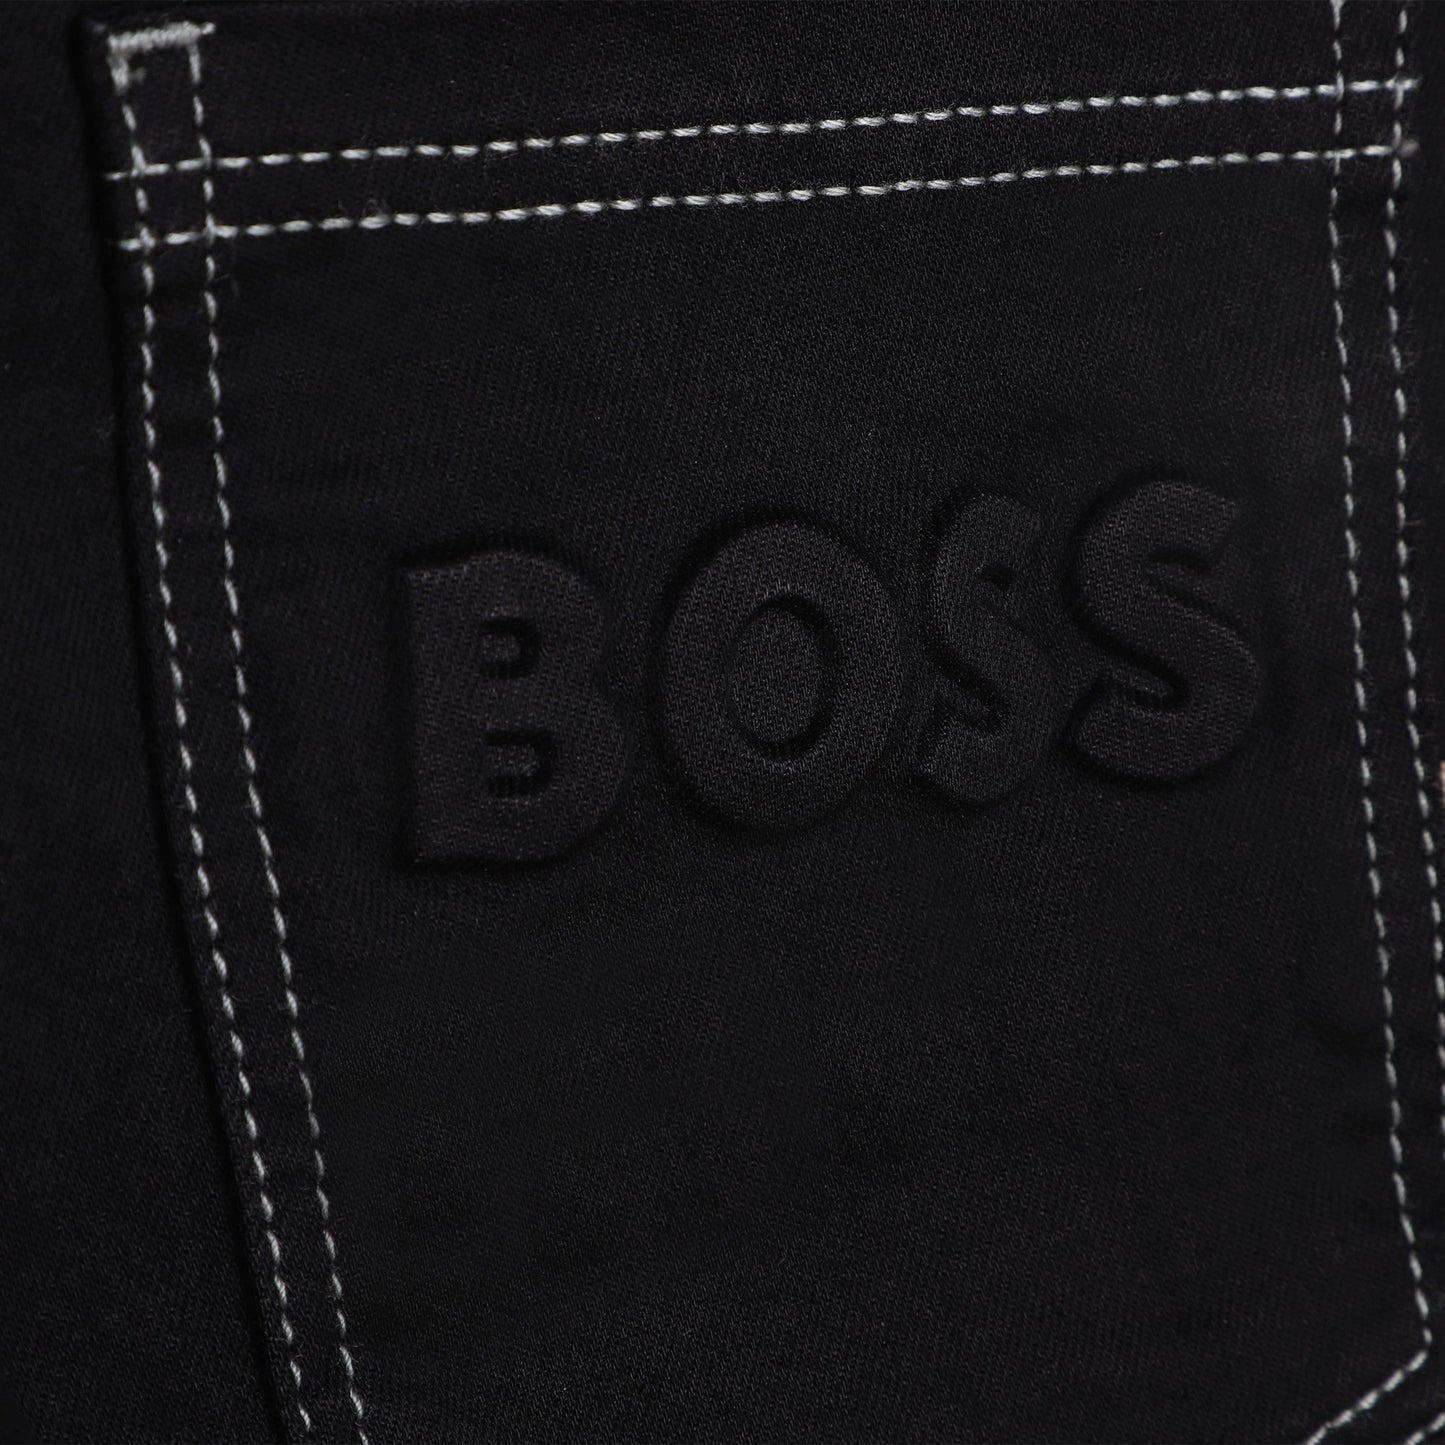 Hugo Boss  Boys Black Denim Slim Fit Jeans_J24875-Z11